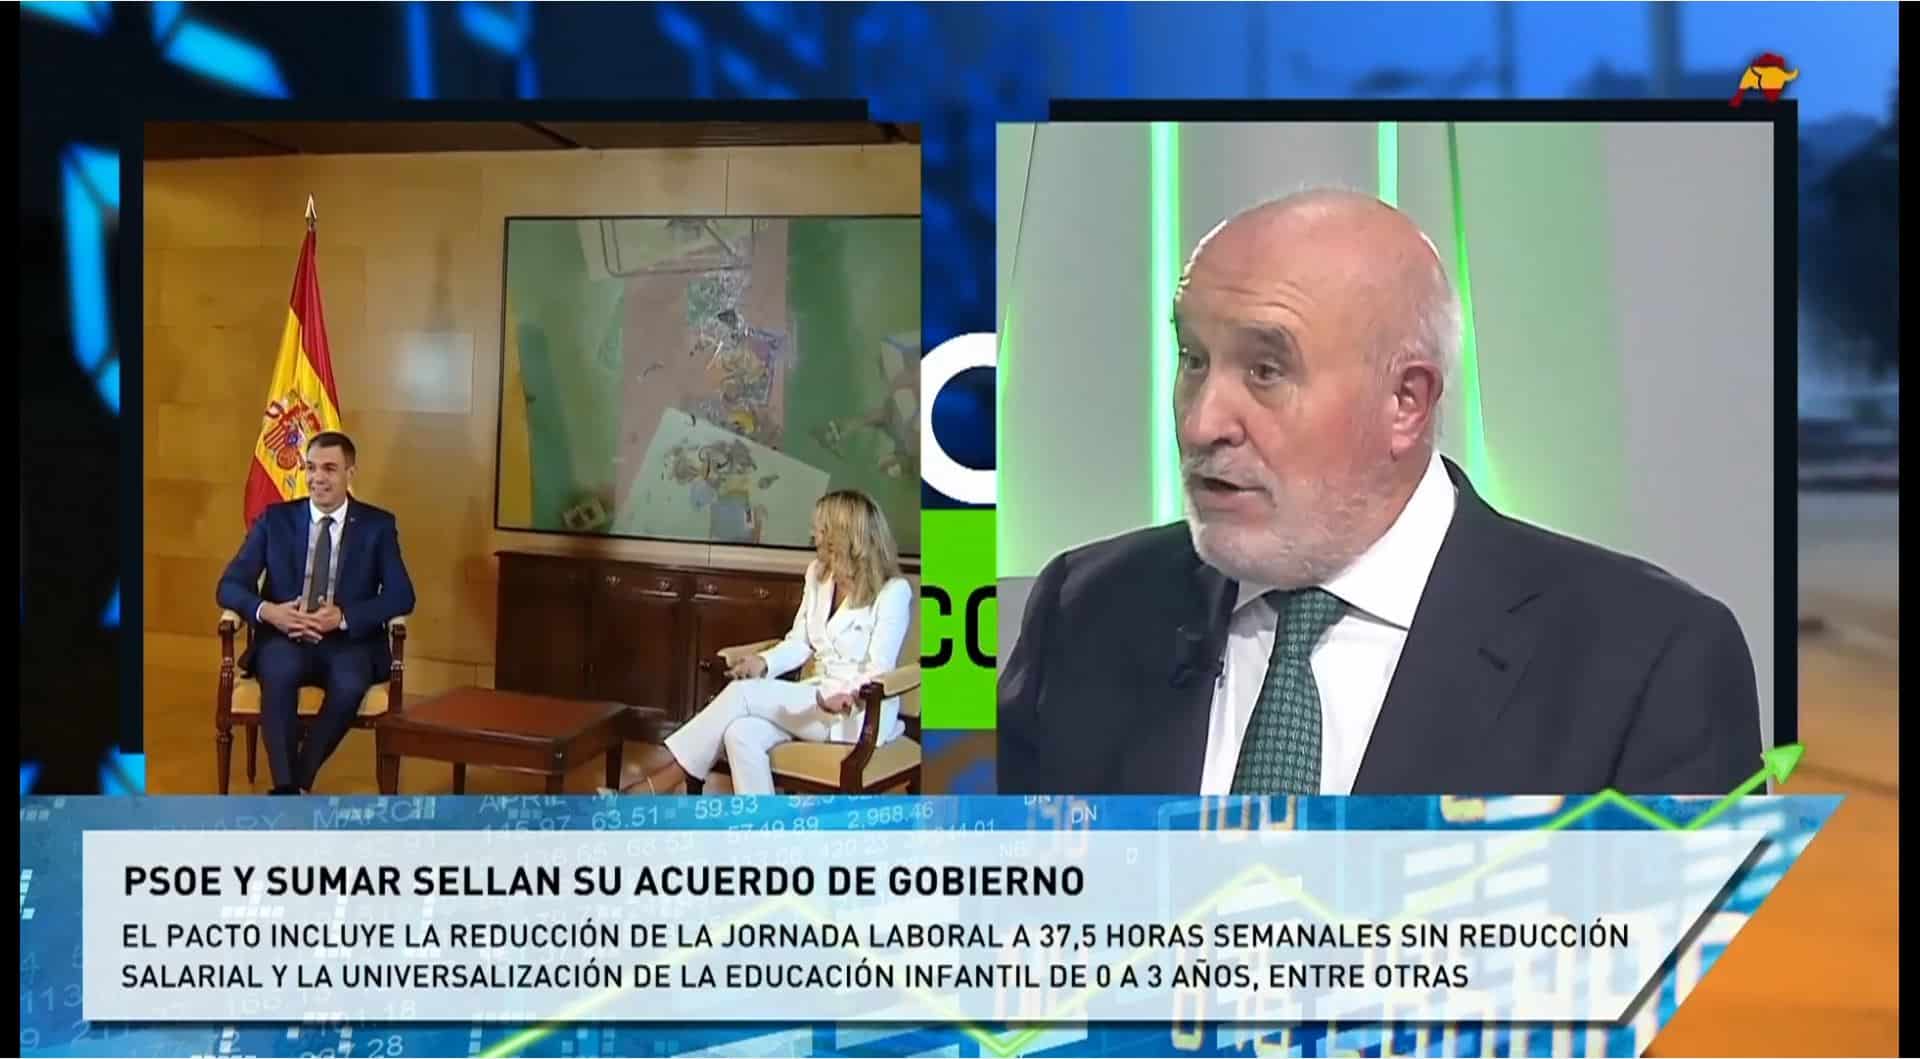  Julián Salcedo corrige a Yolanda Díaz: «La jornada media semanal ya estaba en las 37,58 horas»